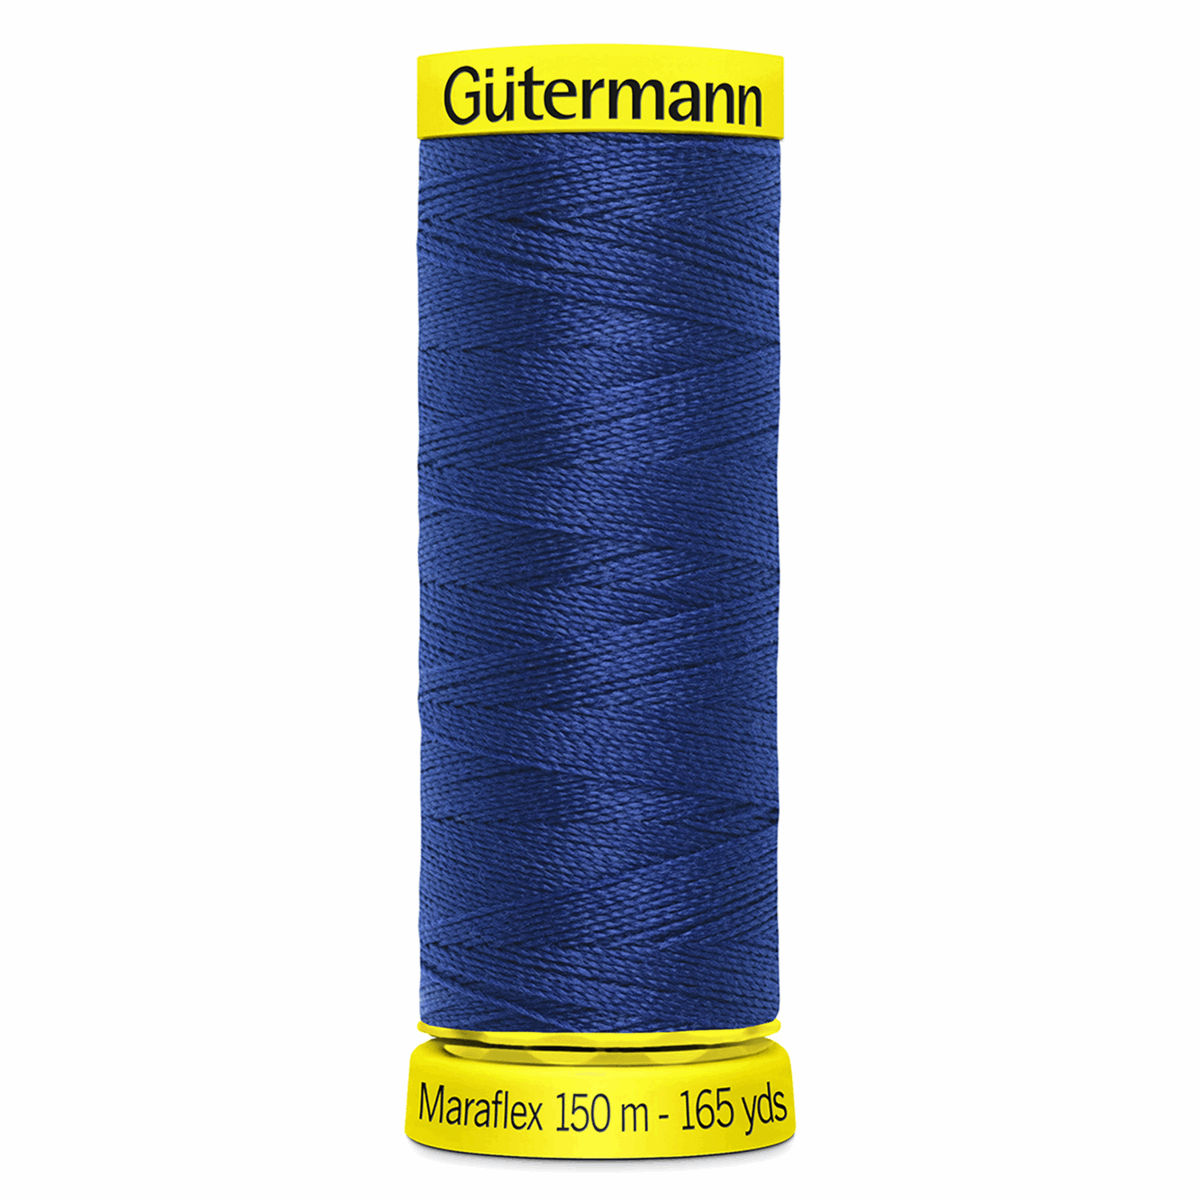 Gutermann Maraflex Elastic Sewing Thread 150m Navy 232